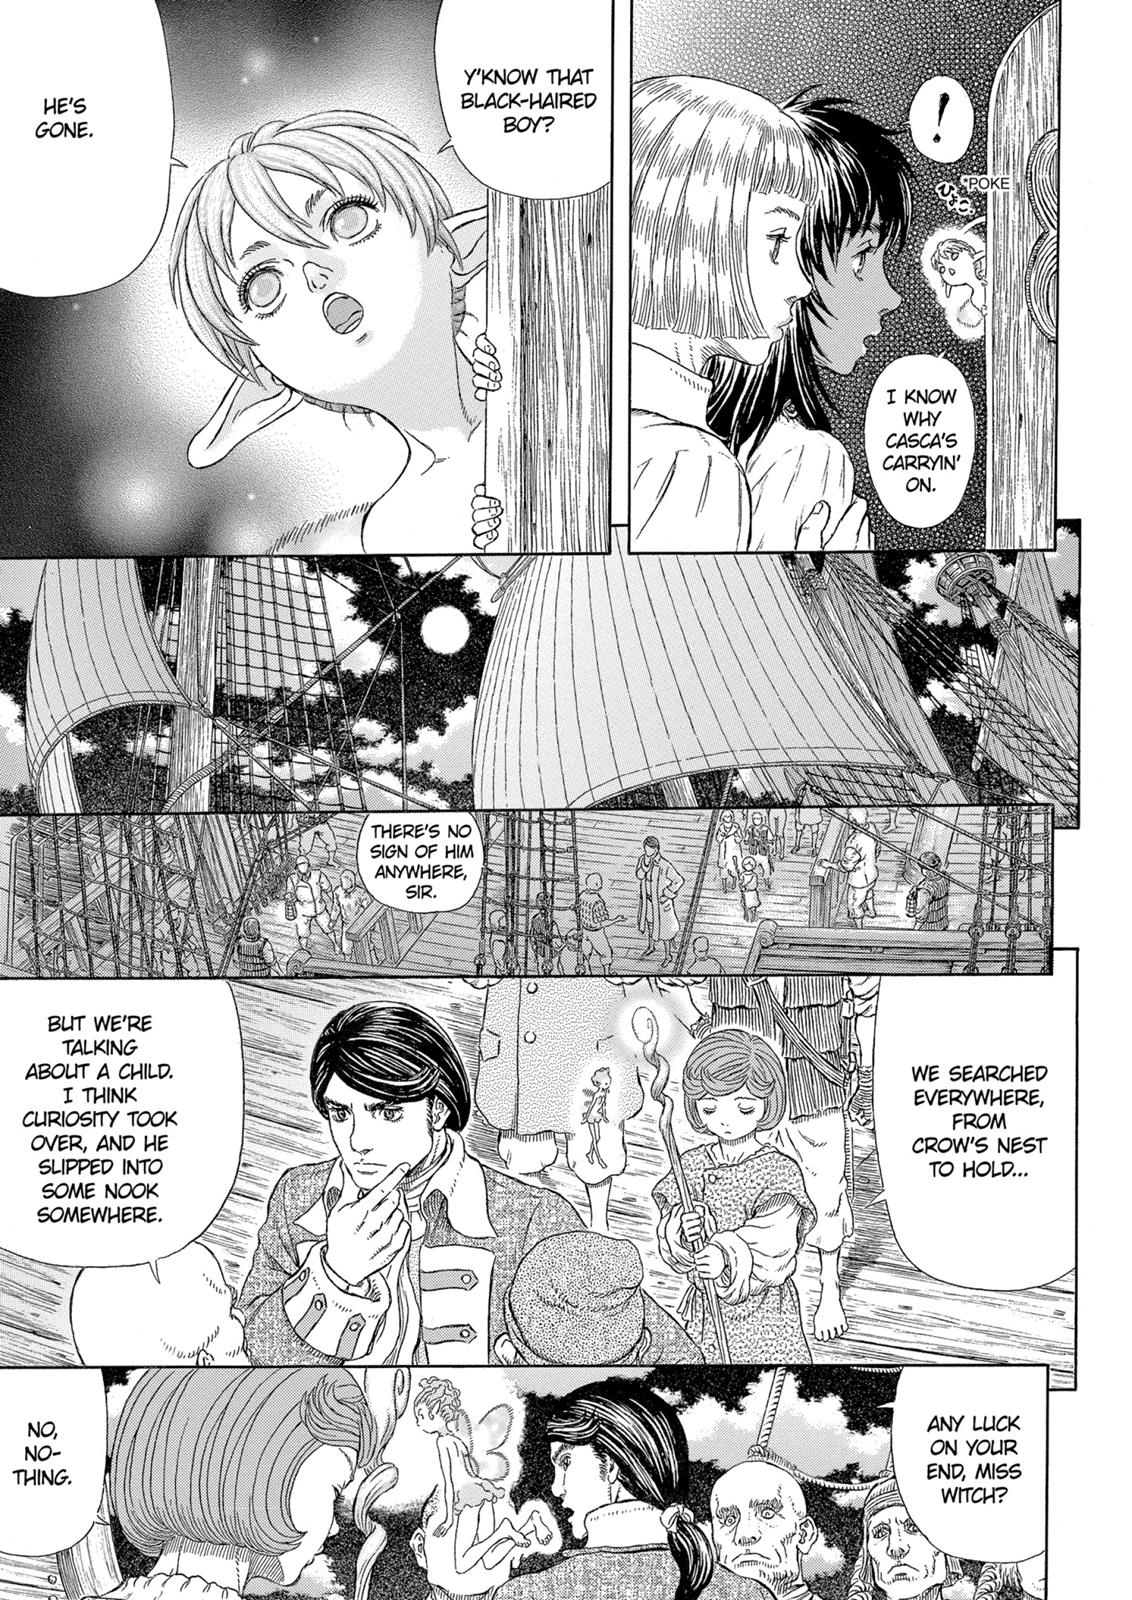 Berserk Manga Chapter 328 image 11